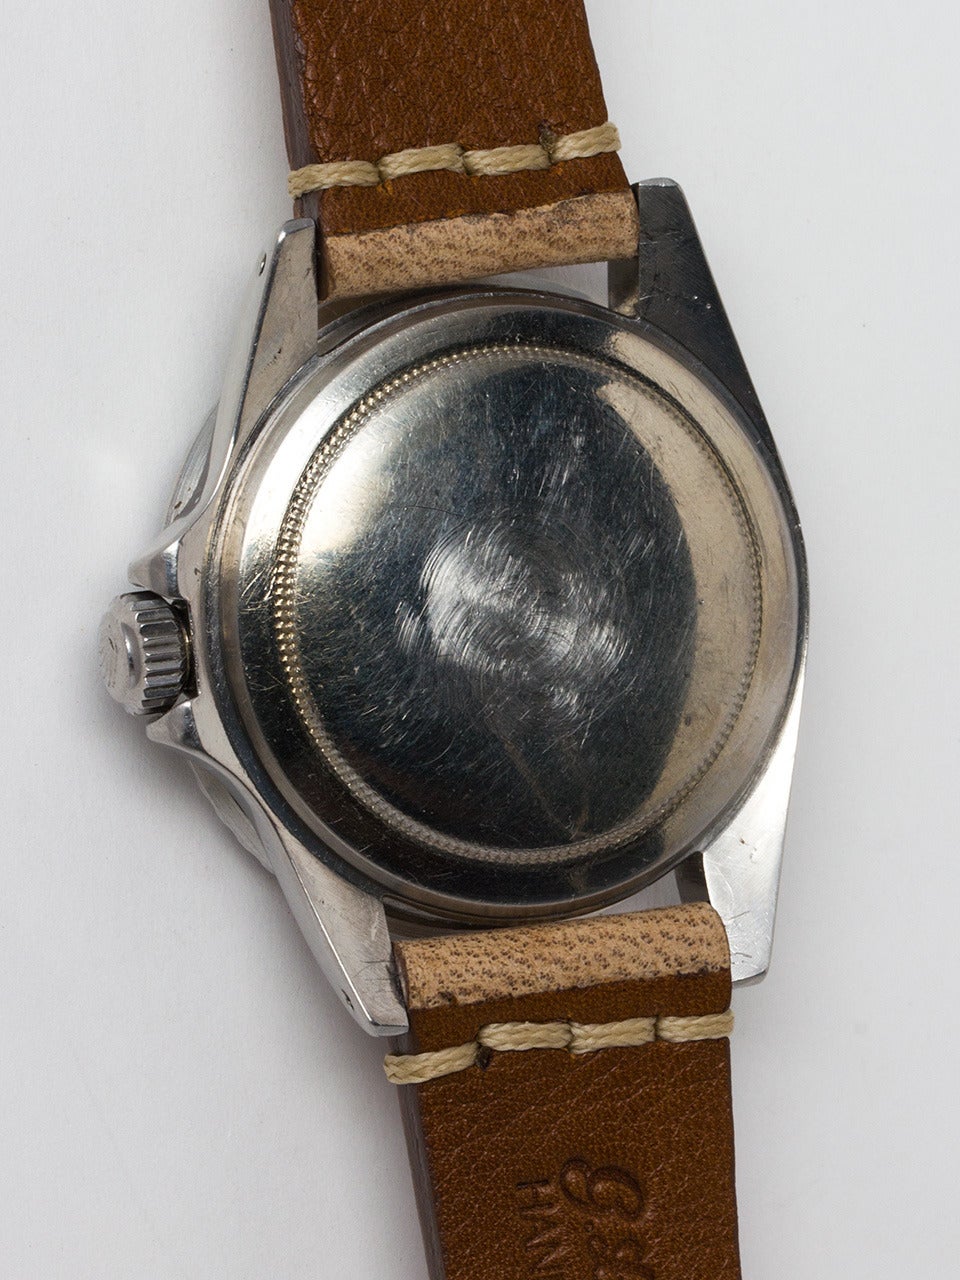 Men's Rolex Stainless Steel Submariner Wristwatch Ref 5513